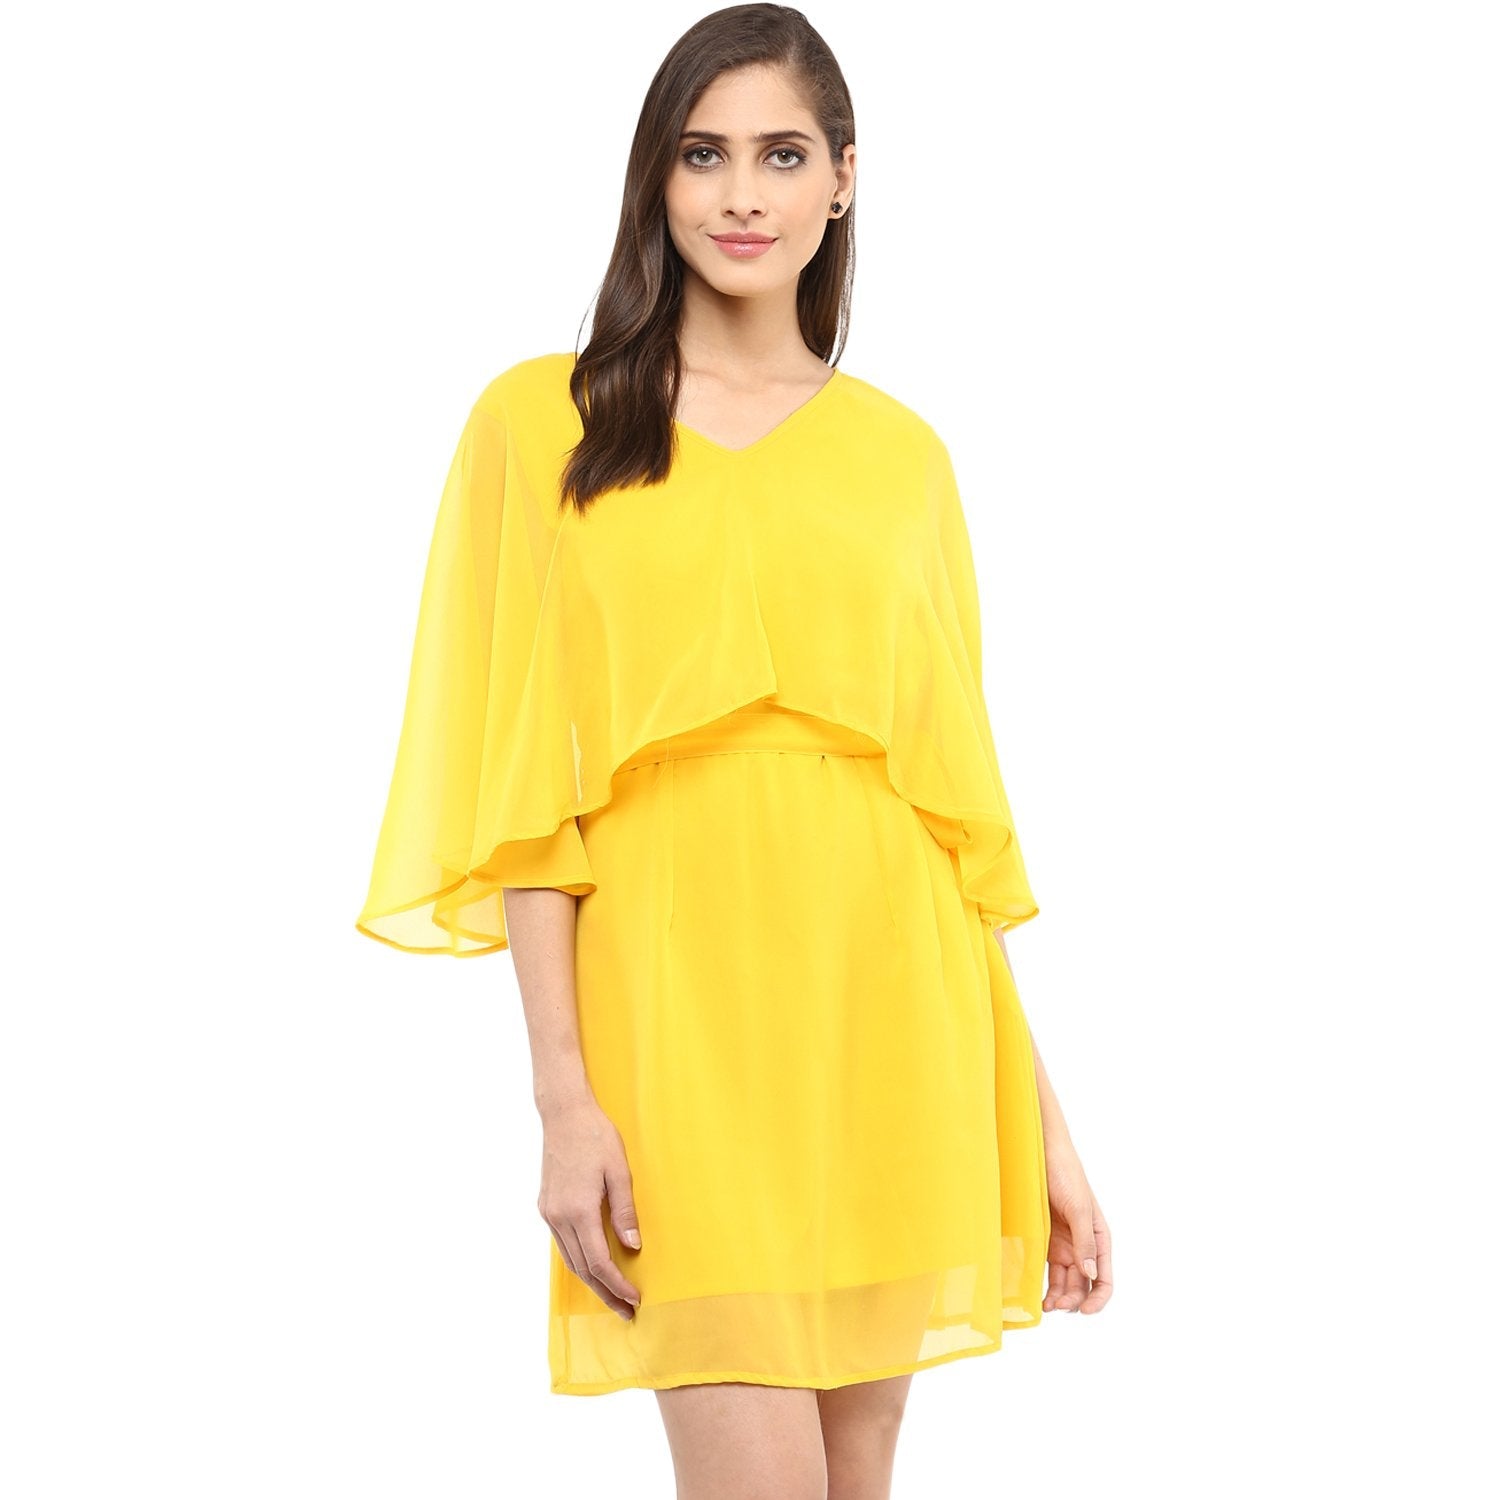 Women's Solid Cape Design Dress - Pannkh